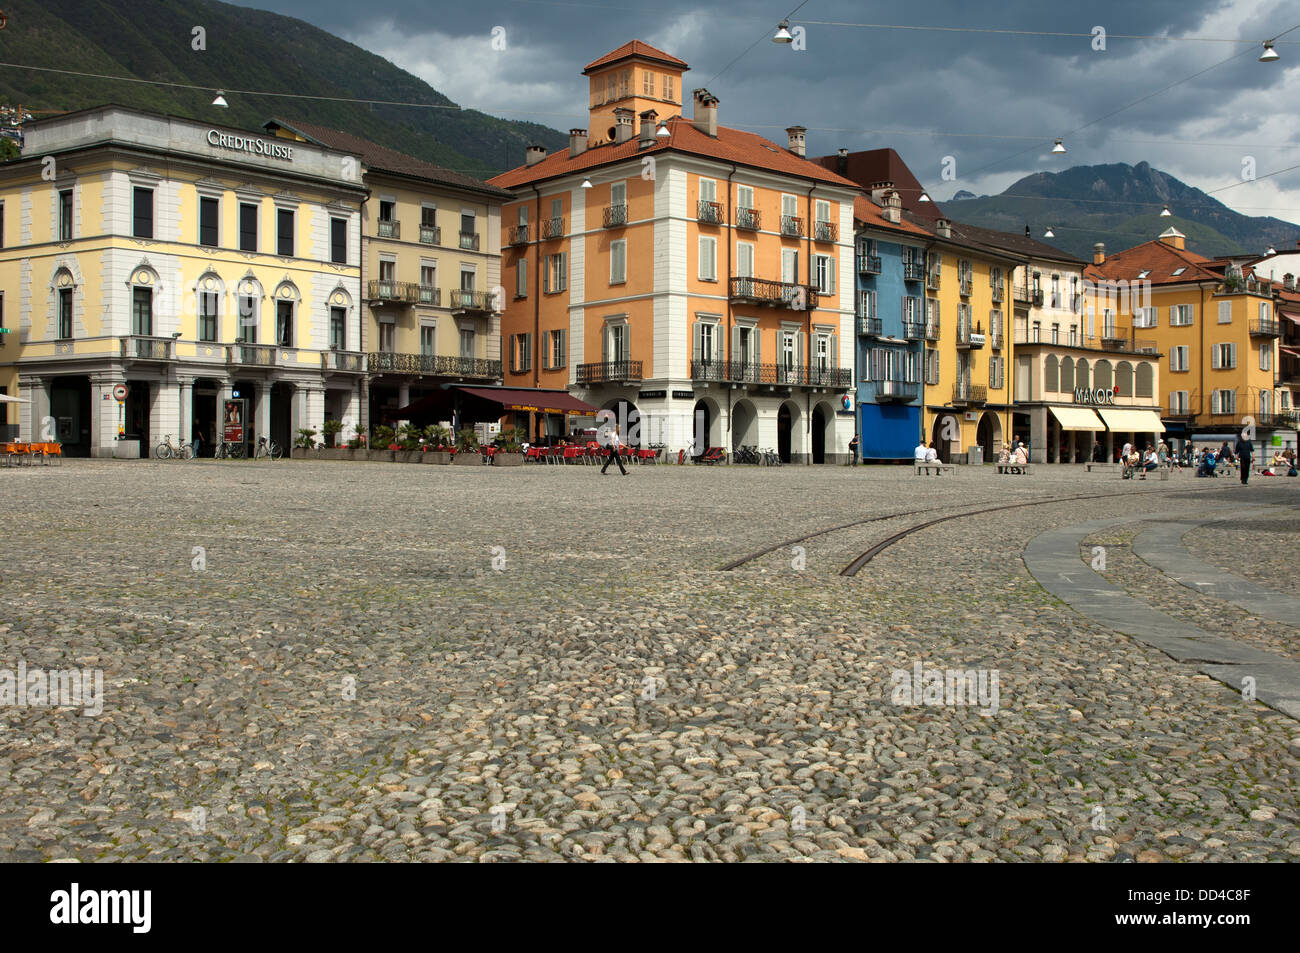 Cobbelstone Pflaster auf den wichtigsten Platz Piazza Grande, Locarno,  Tessin, Schweiz Stockfotografie - Alamy